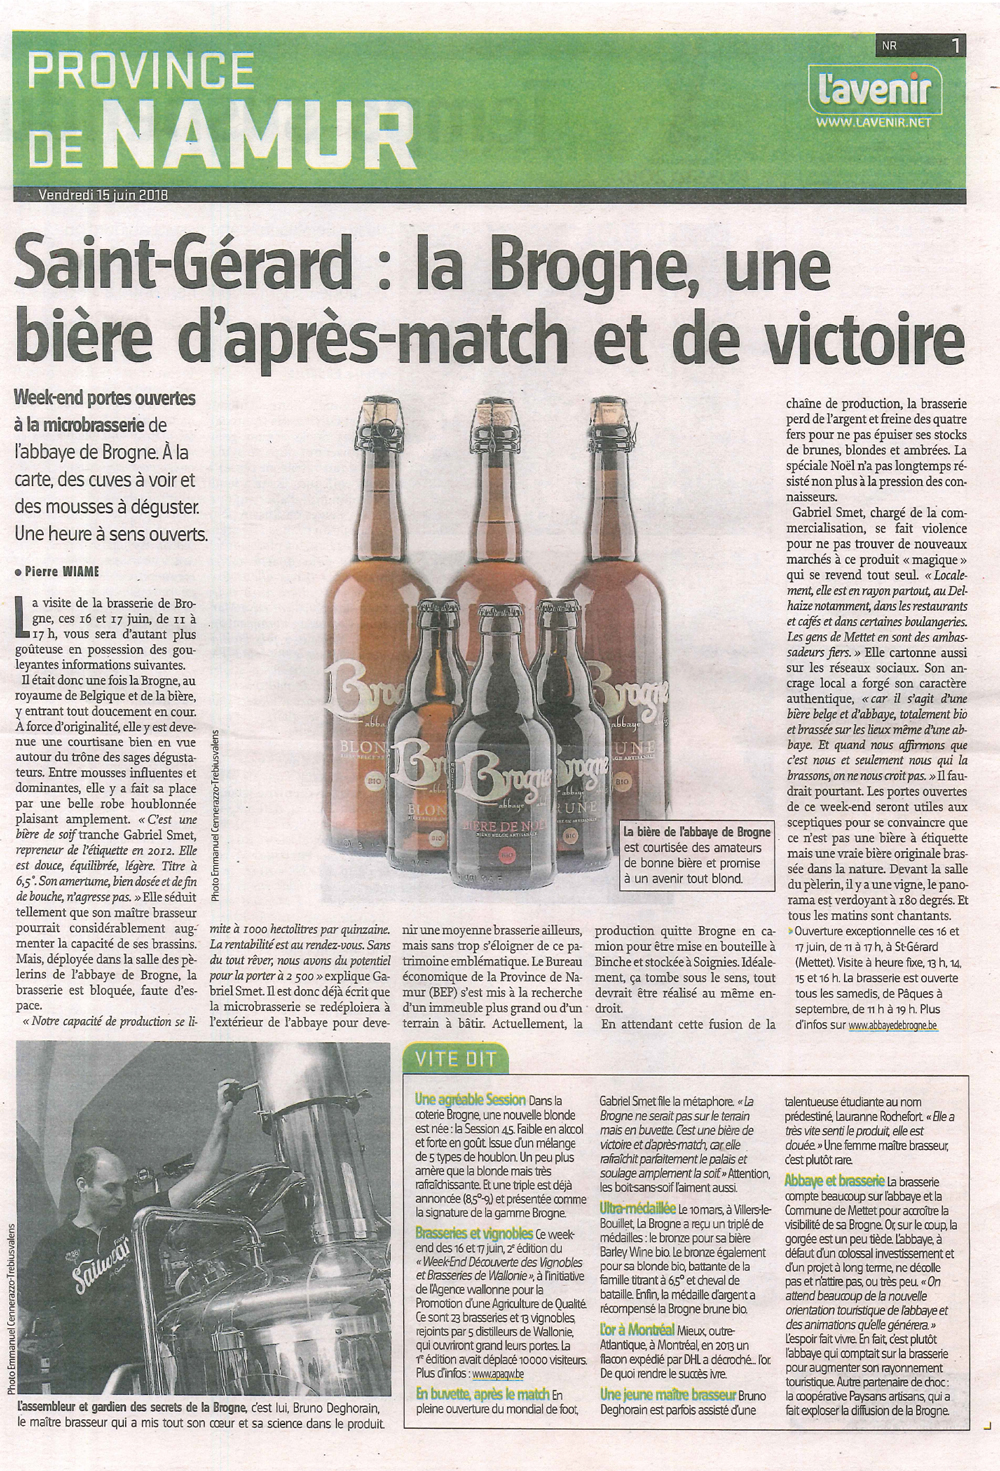 Saint-Gérard: la Brogne, une bière d’après-match et de victoire